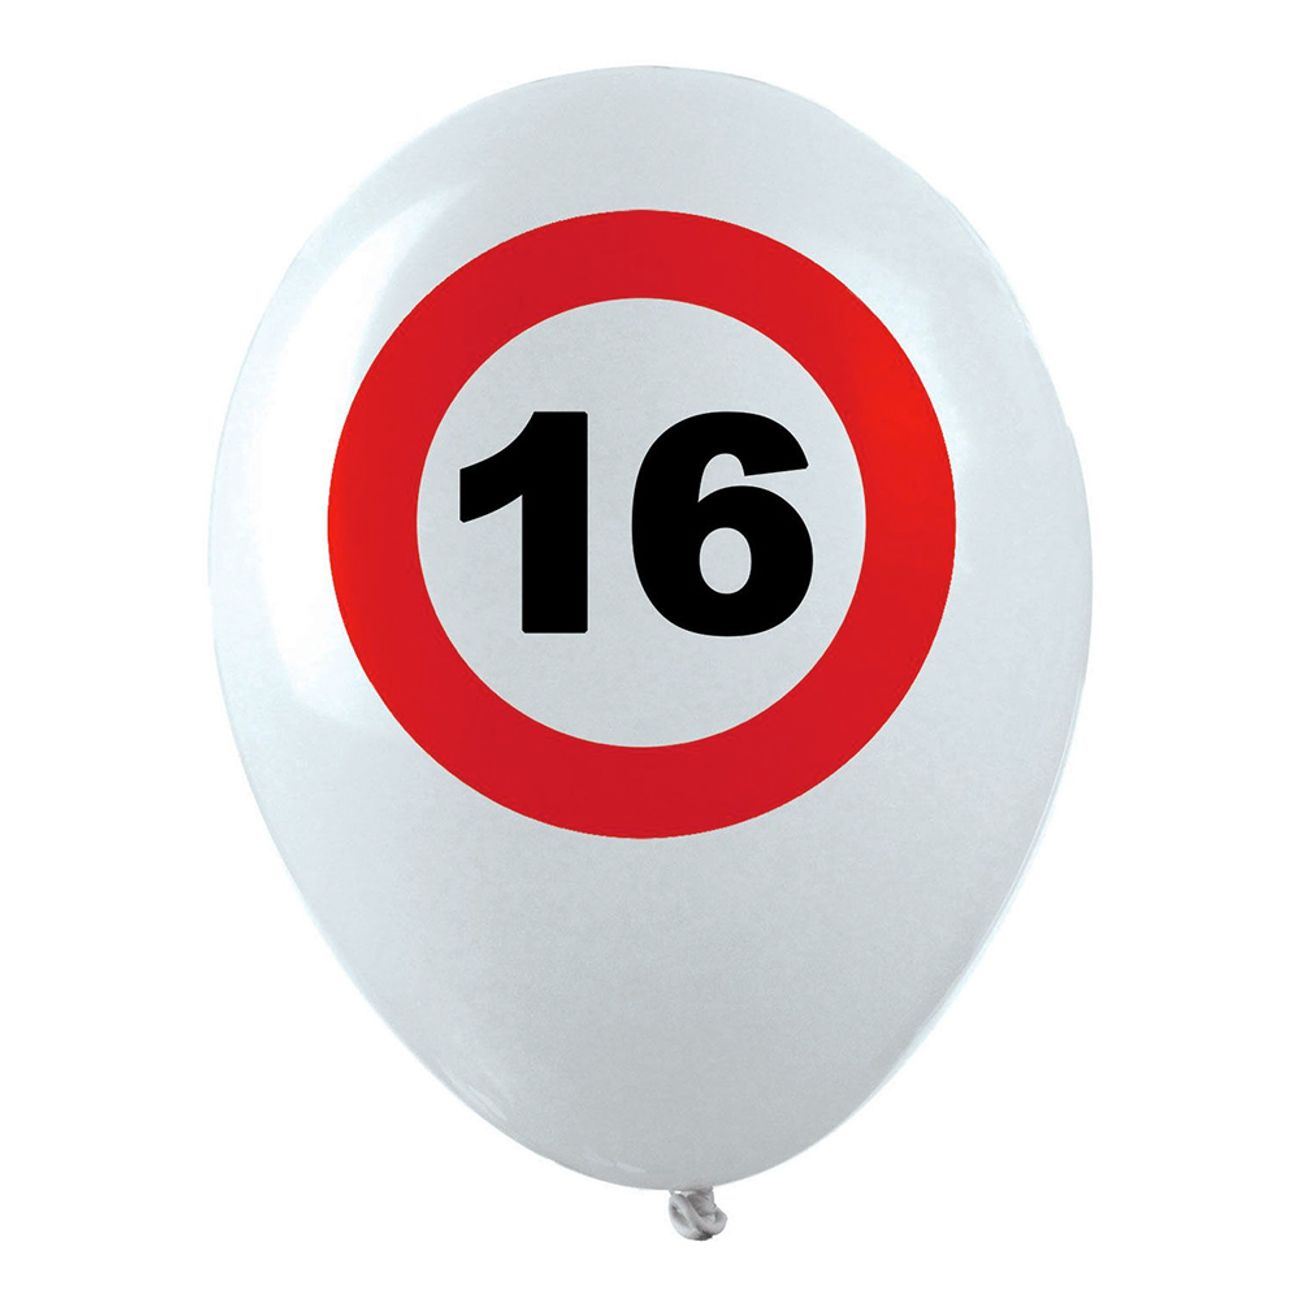 ballonger-trafikskylt-16-1